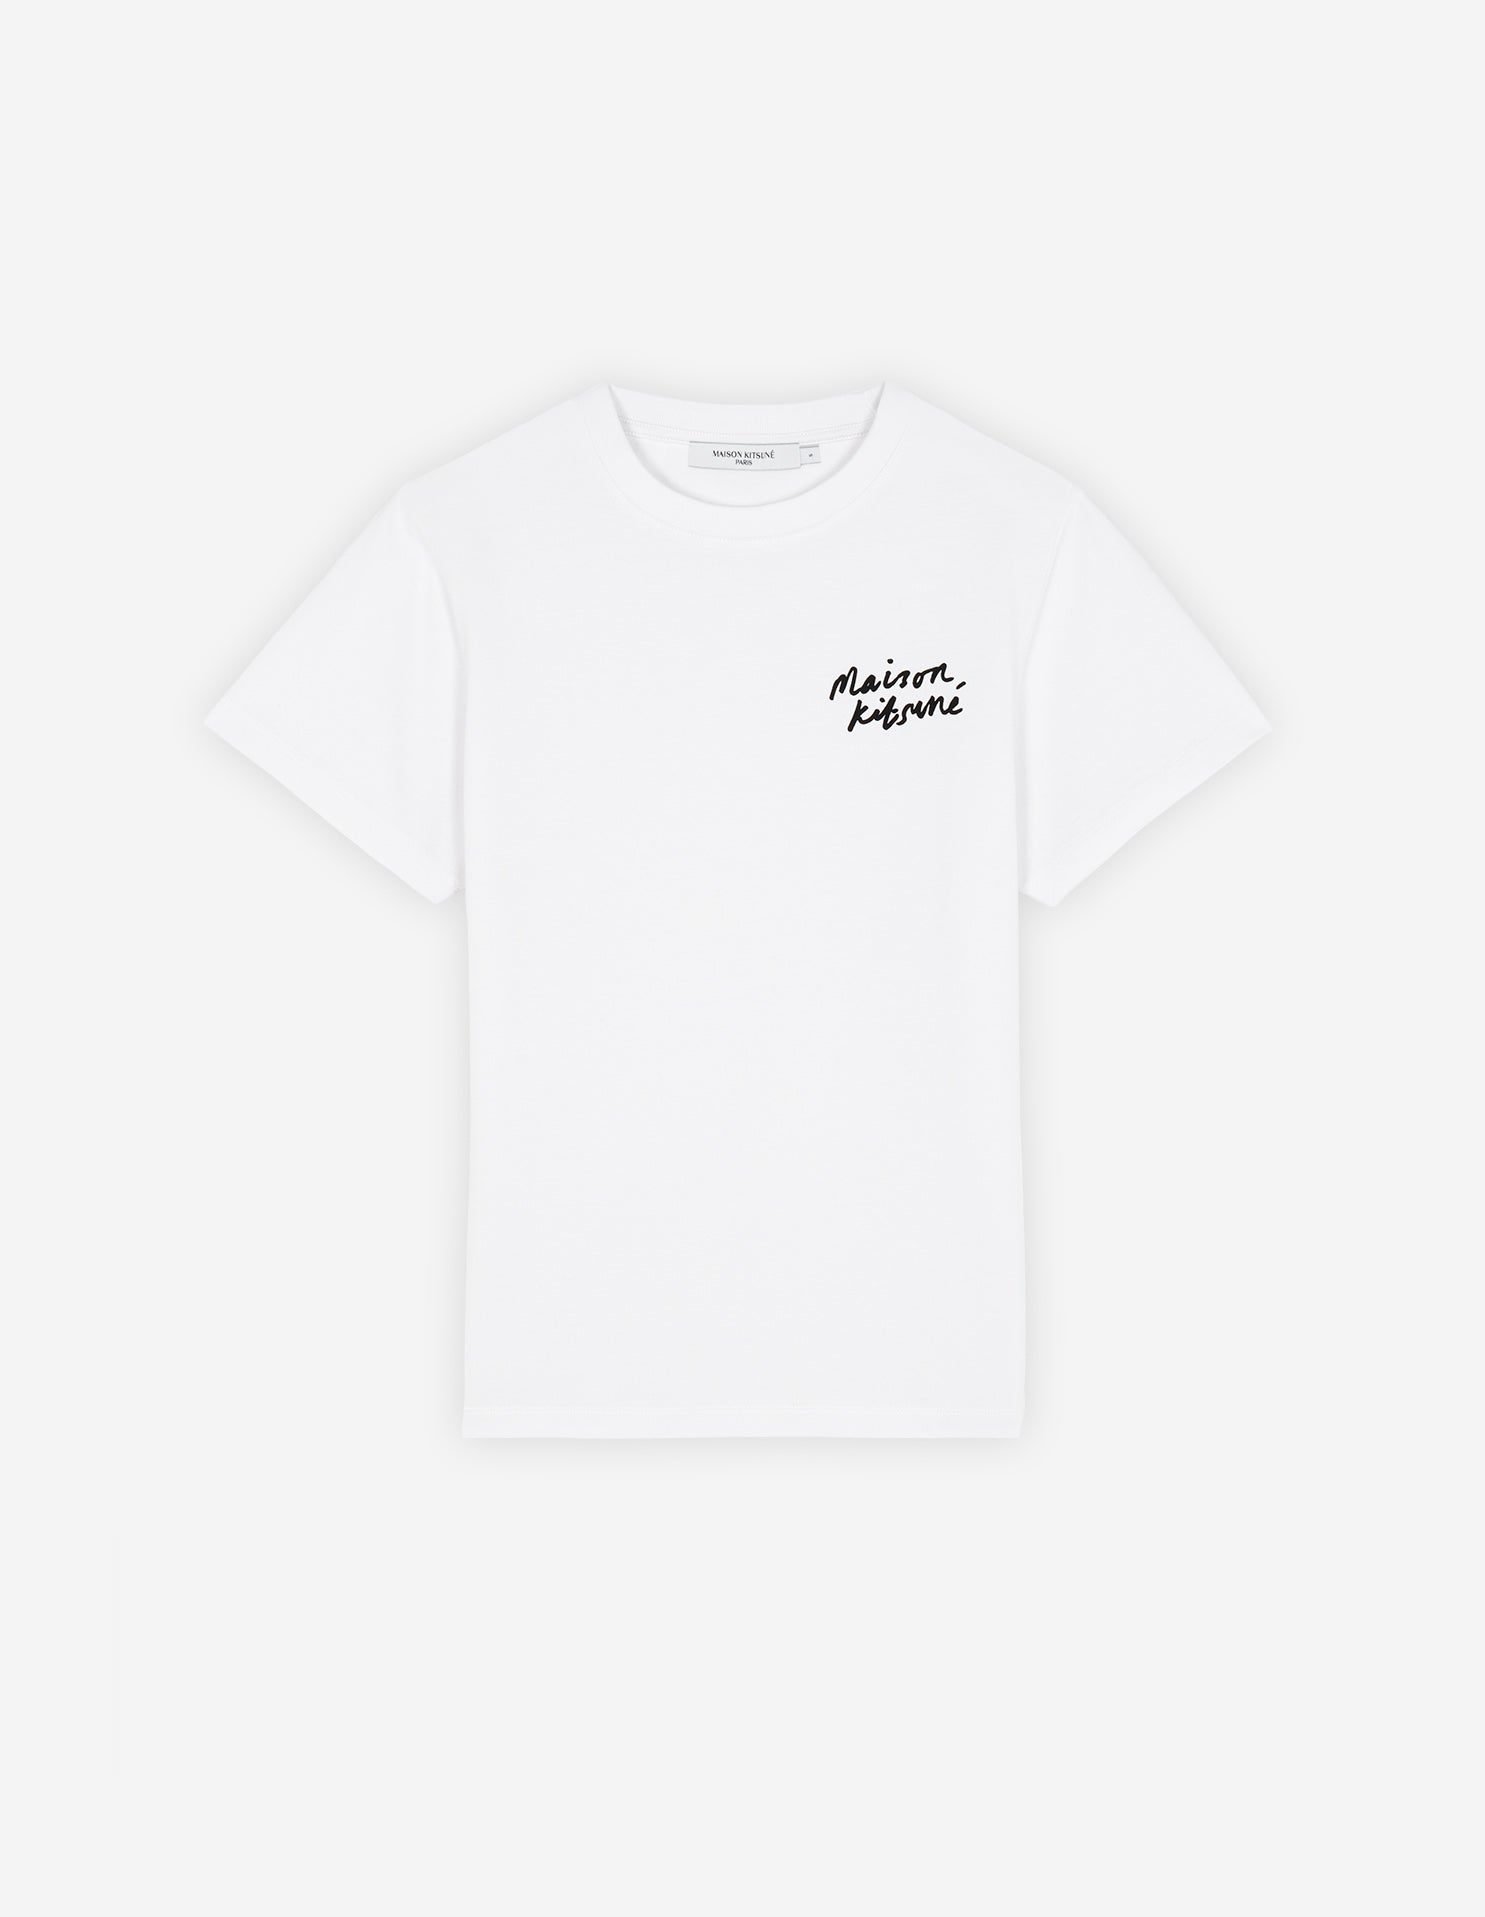 Mini handwriting t-shirt, white